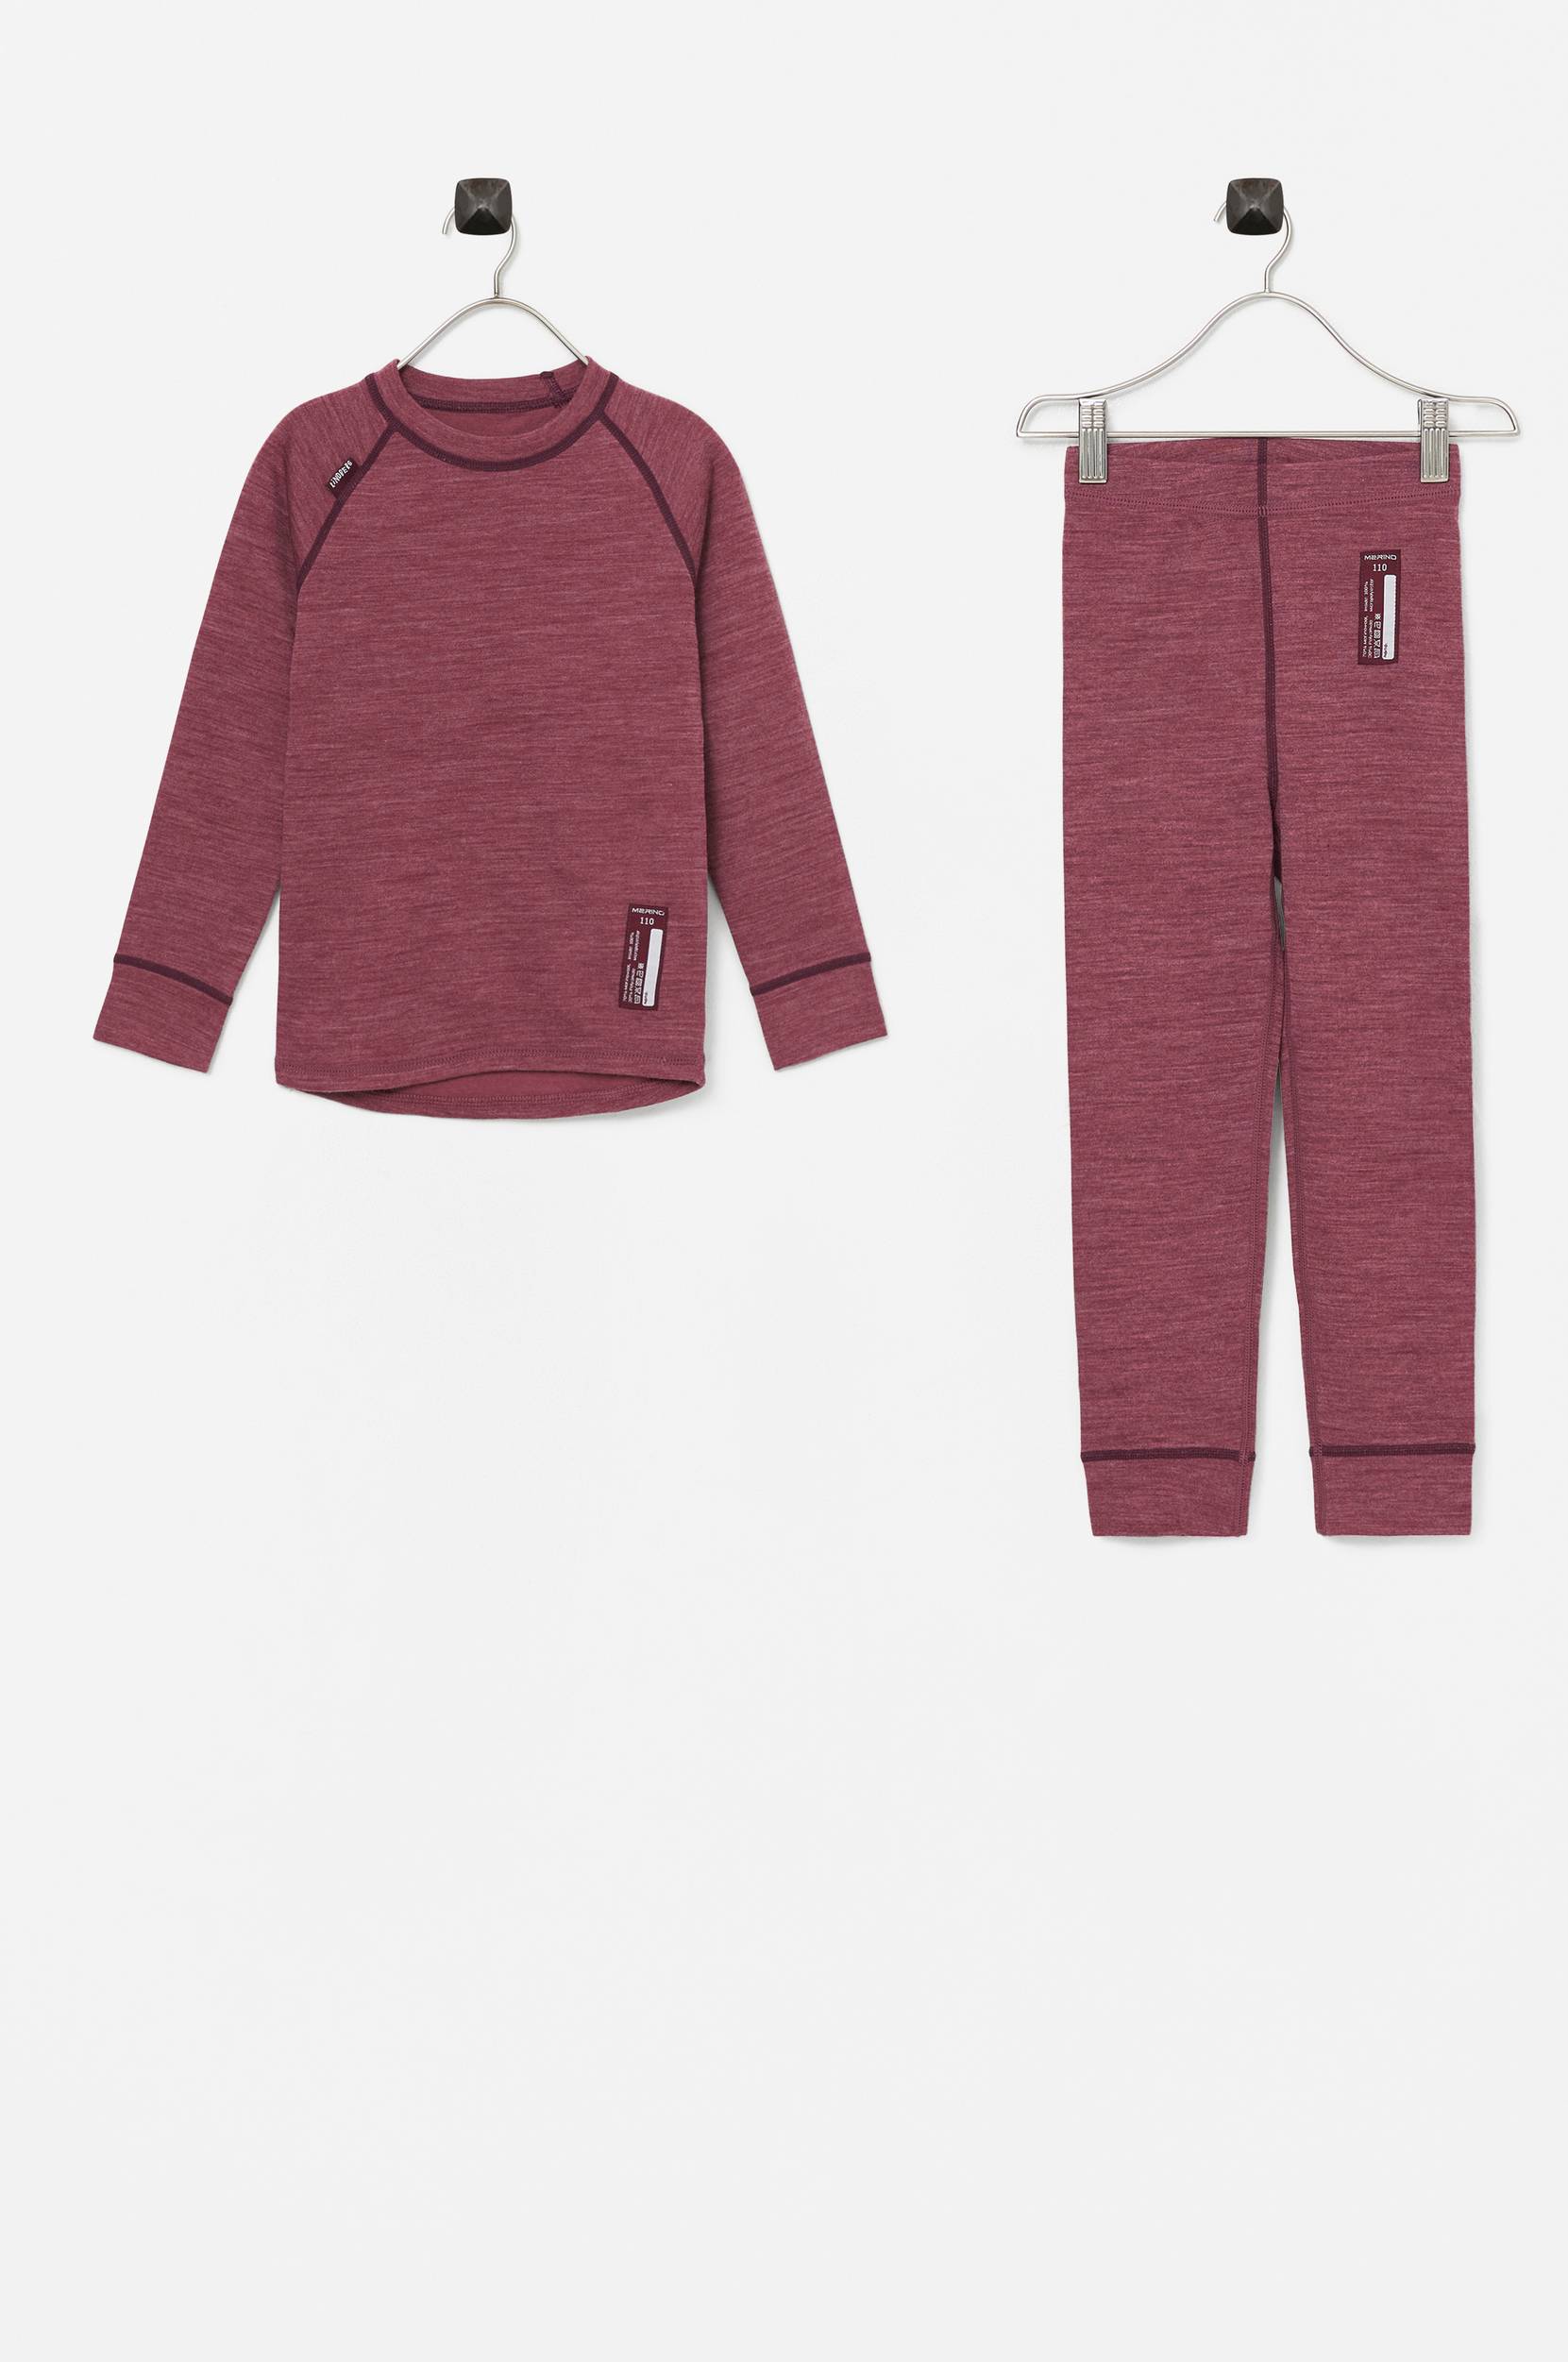 Lindberg - Undertøjs-sæt Merino Wool Set Junior i to fra Lindberg - Rosa - 160 - Diverse børnetøj - Tøj til børn (31261939)